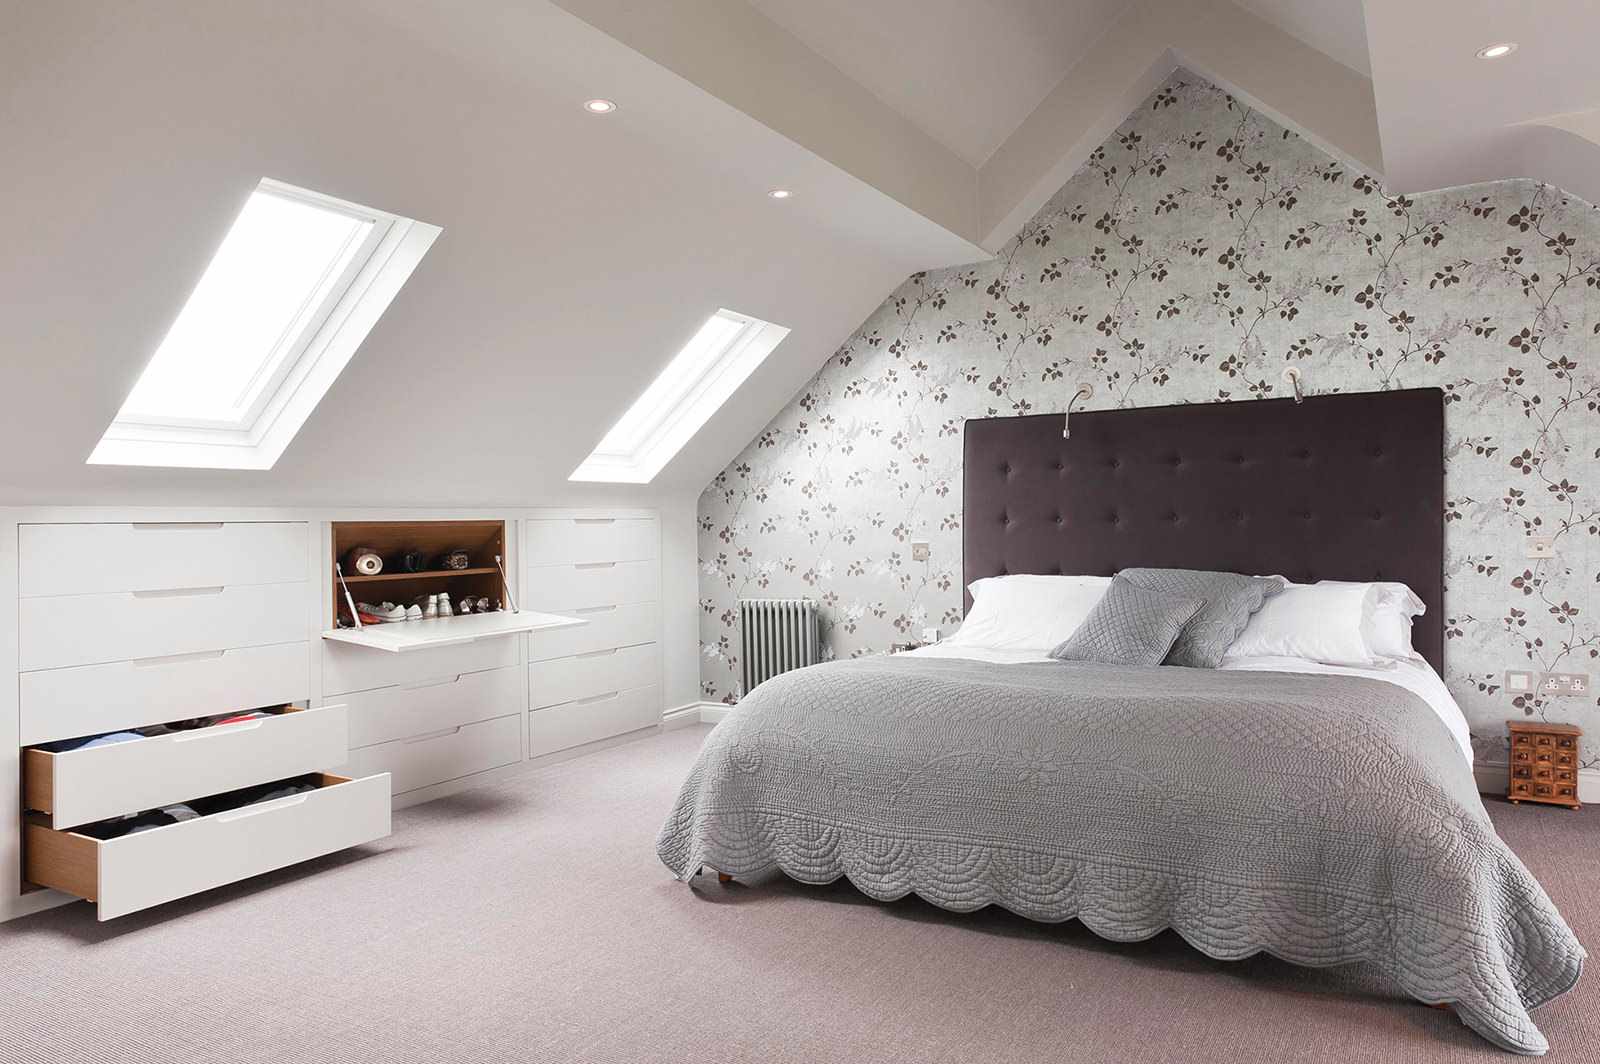 דוגמה לעיצוב יפהפה של חדר שינה בעליית הגג